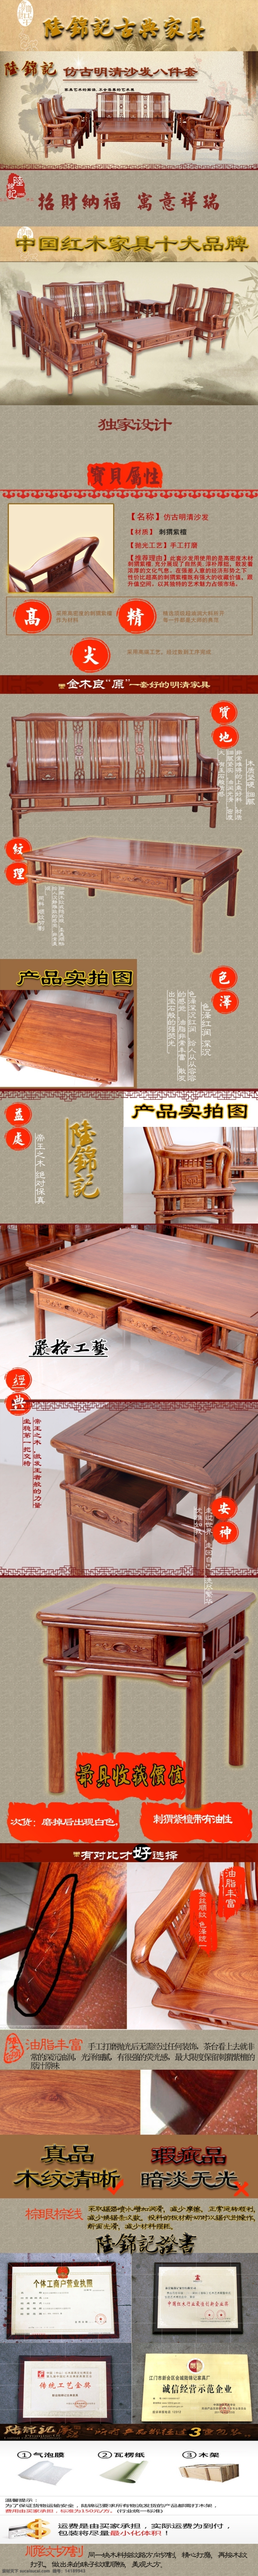 中国 风 红木家具 黄色地面 原创设计 原创淘宝设计